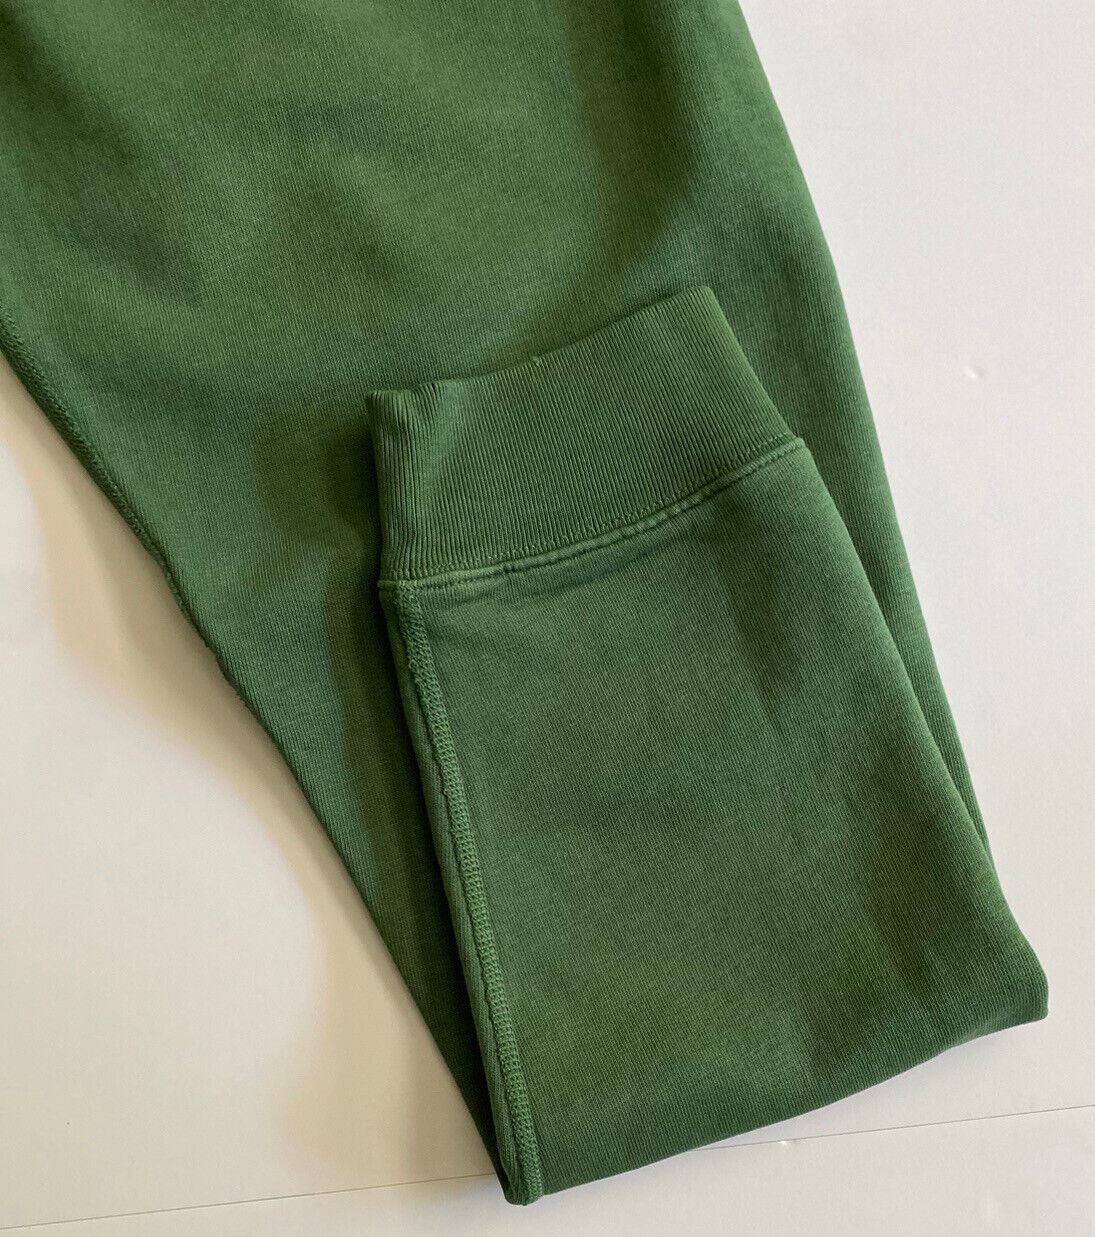 Мужские современные зеленые повседневные брюки Polo Ralph Lauren, размер XL, NWT $168